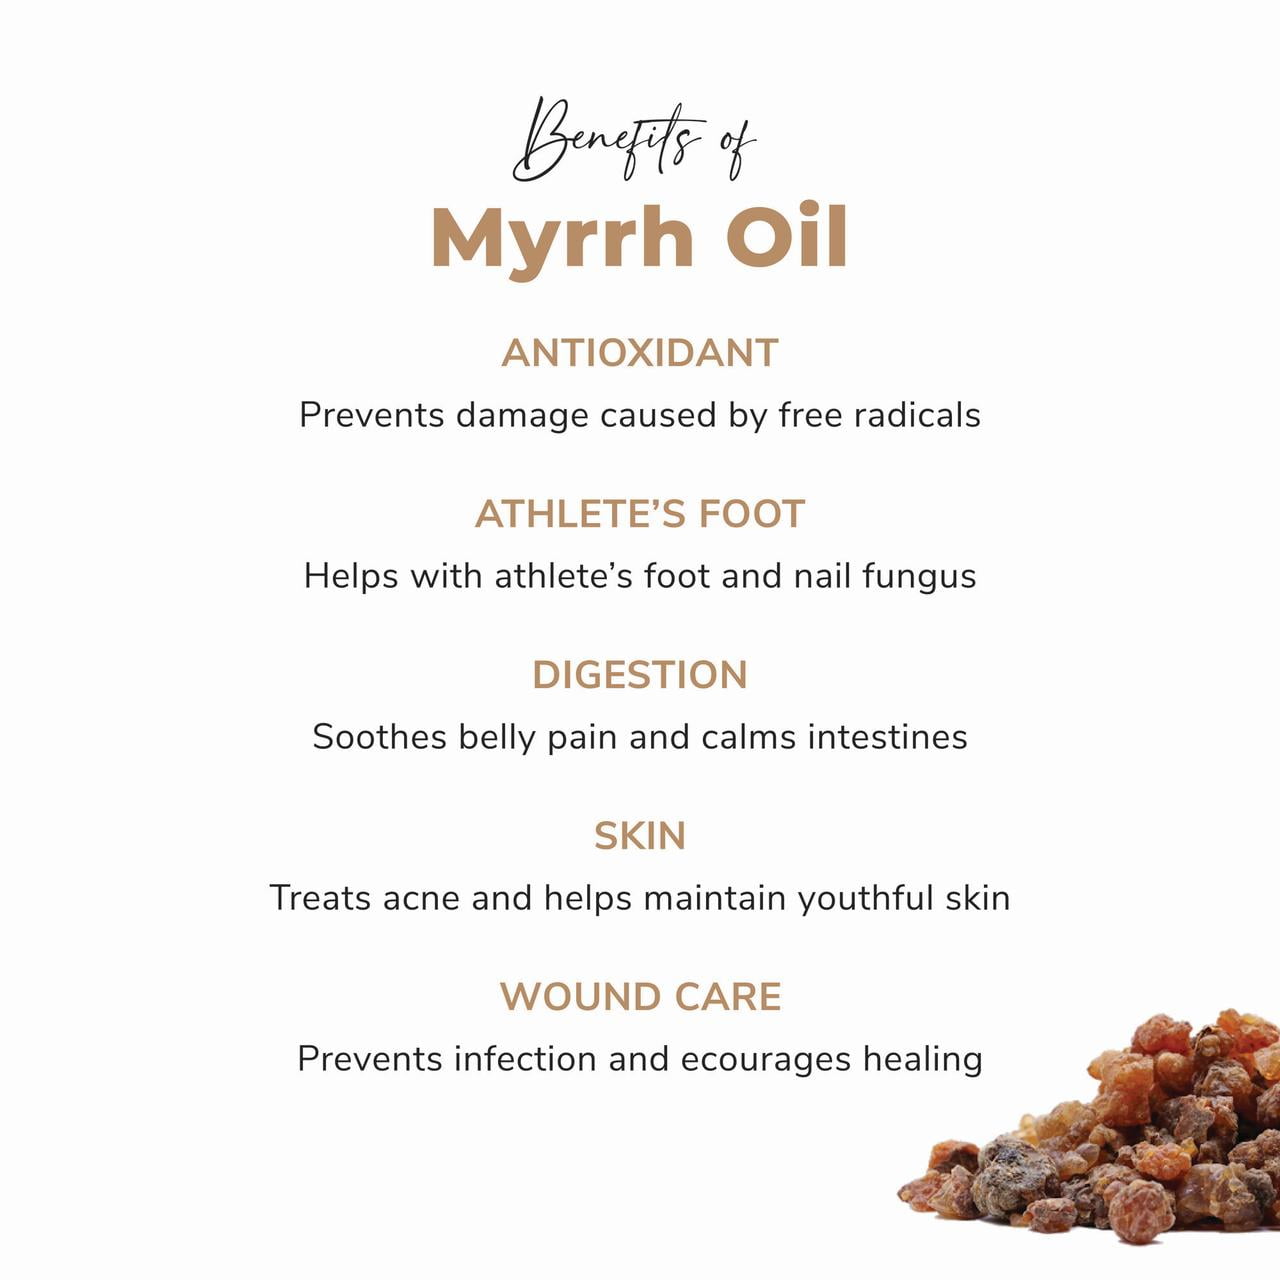 Benefits of Myrrh Essential Oil